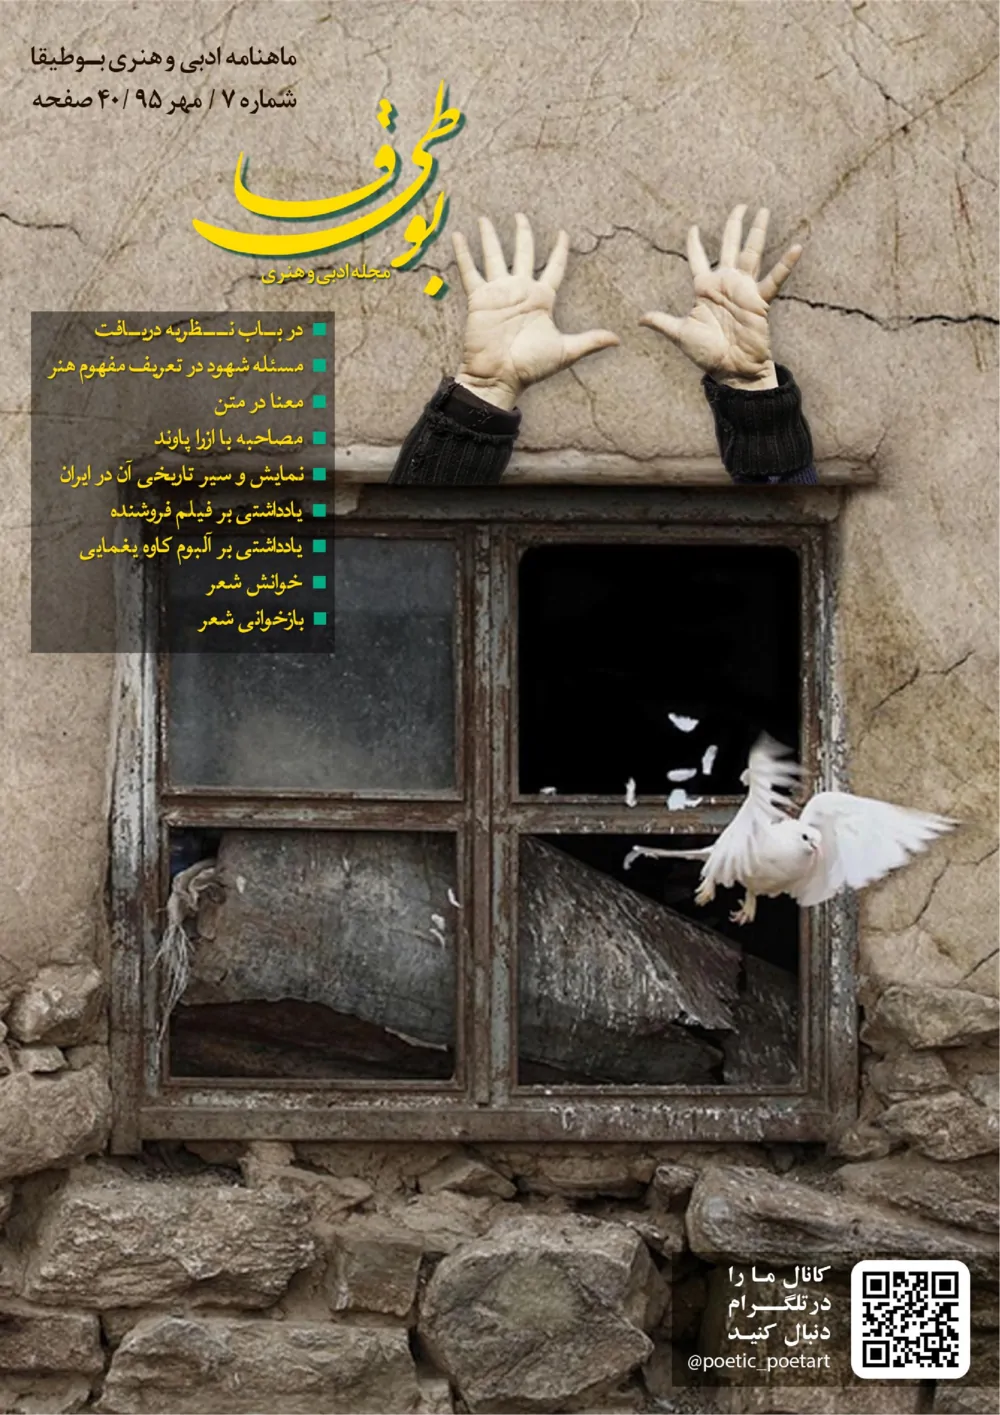 مجله ادبی بوطیقا - شماره ۷ - مهر ۱۳۹۵